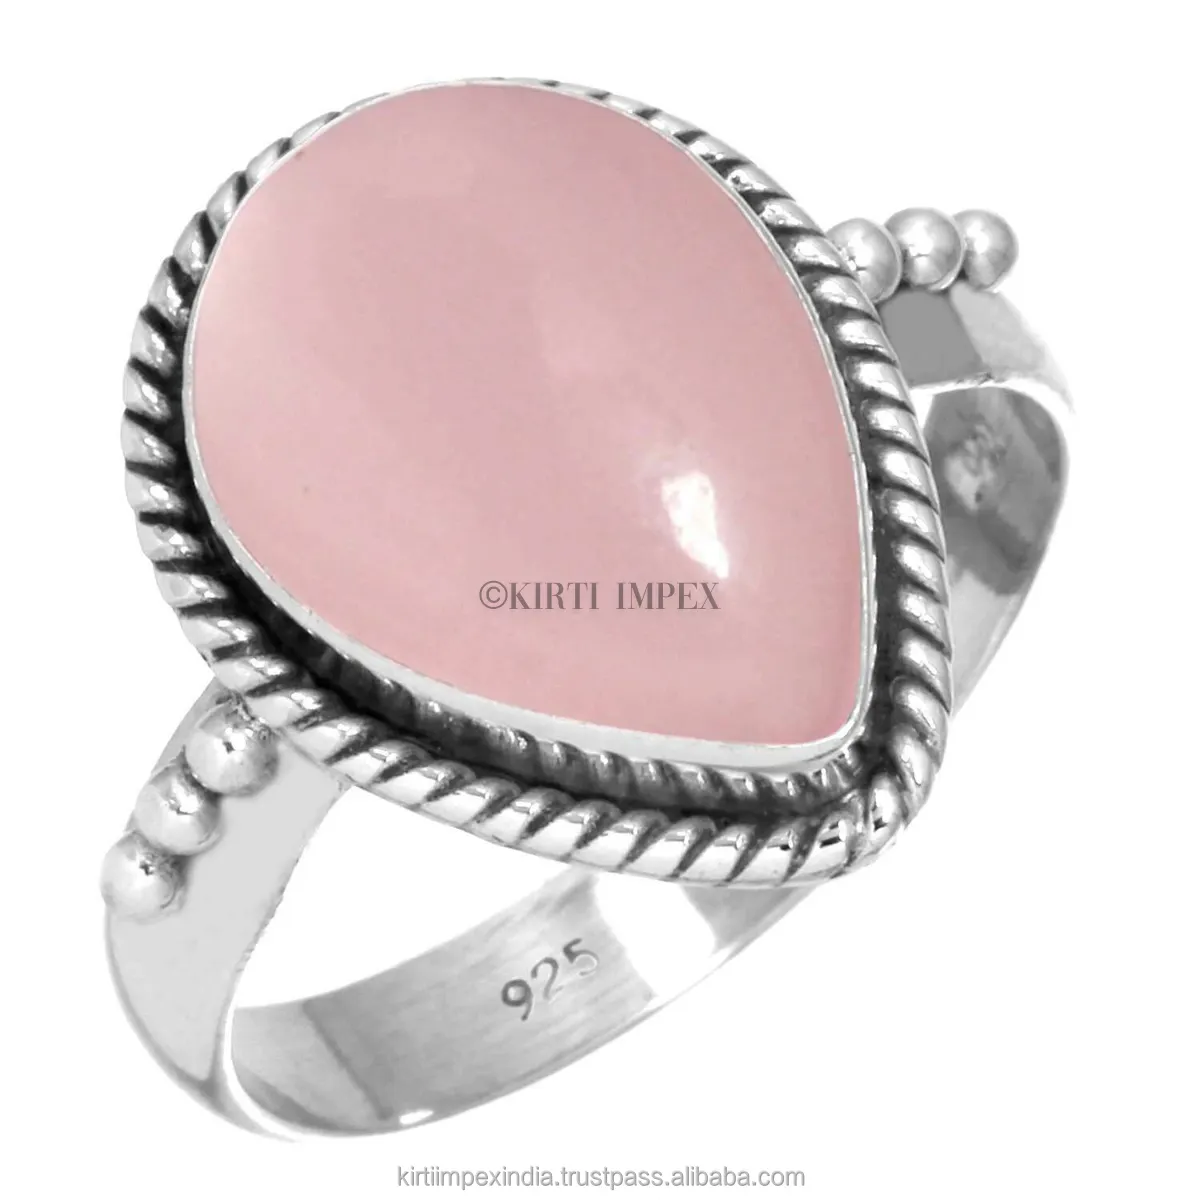 Chic Midi Handgemaakte Sieraden Rose Quartz Unieke Ontwerpen Zilveren Overlay Boho Ringen Vintage Vrouwen Sieraden Voor Retailers